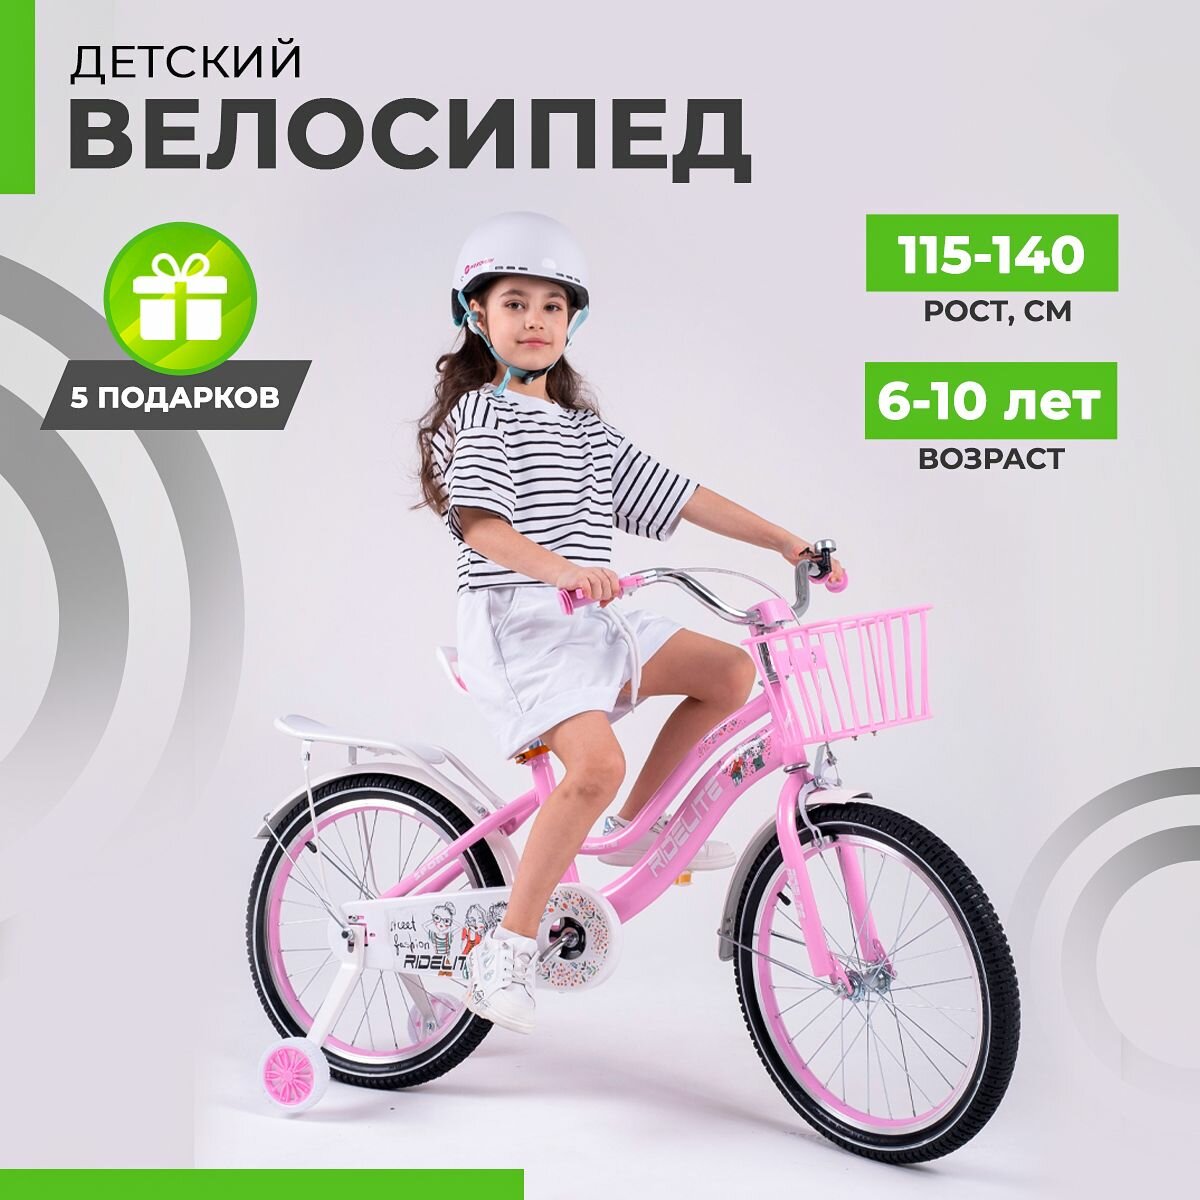 Велосипед детский двухколесный 20", велик для девочек, RIDELITE розовая рама 11", рост 115-140 см